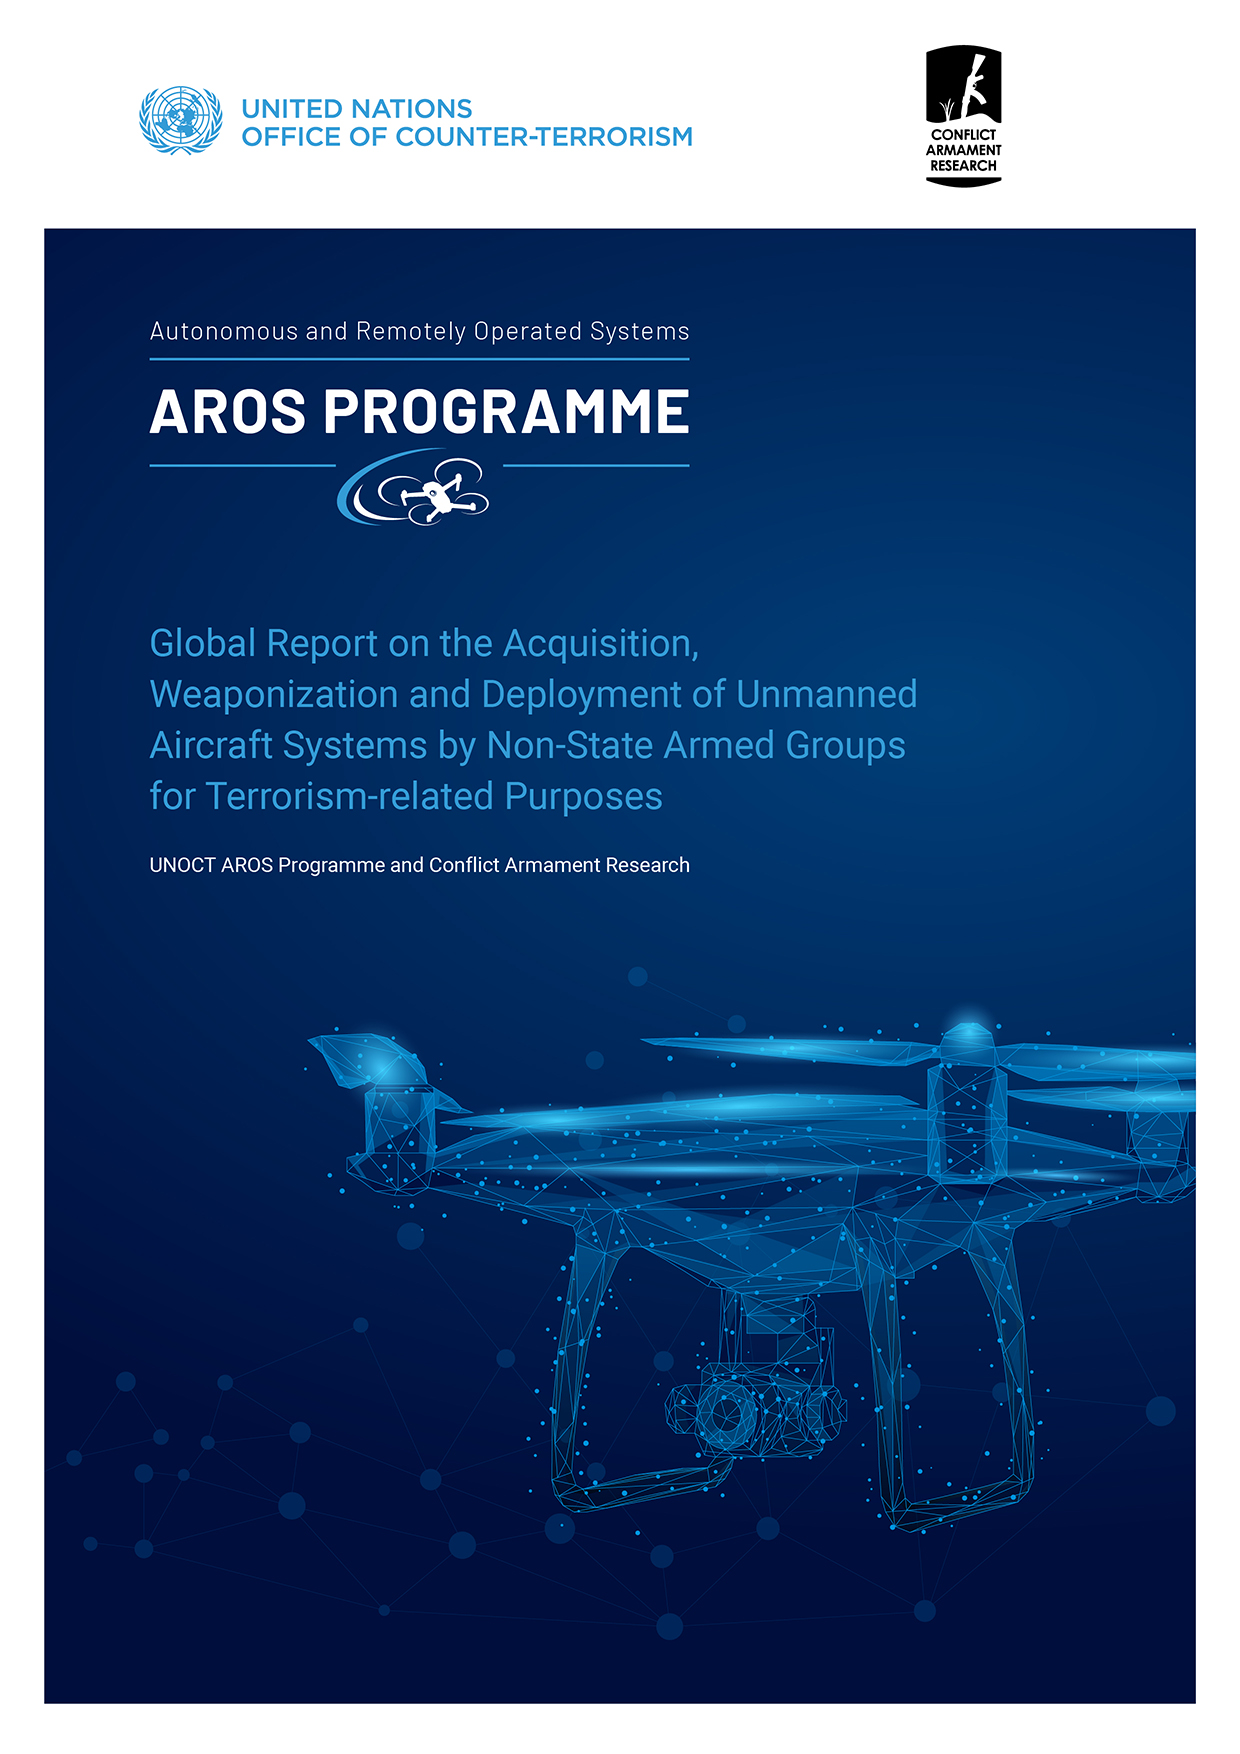 AROS Global Report